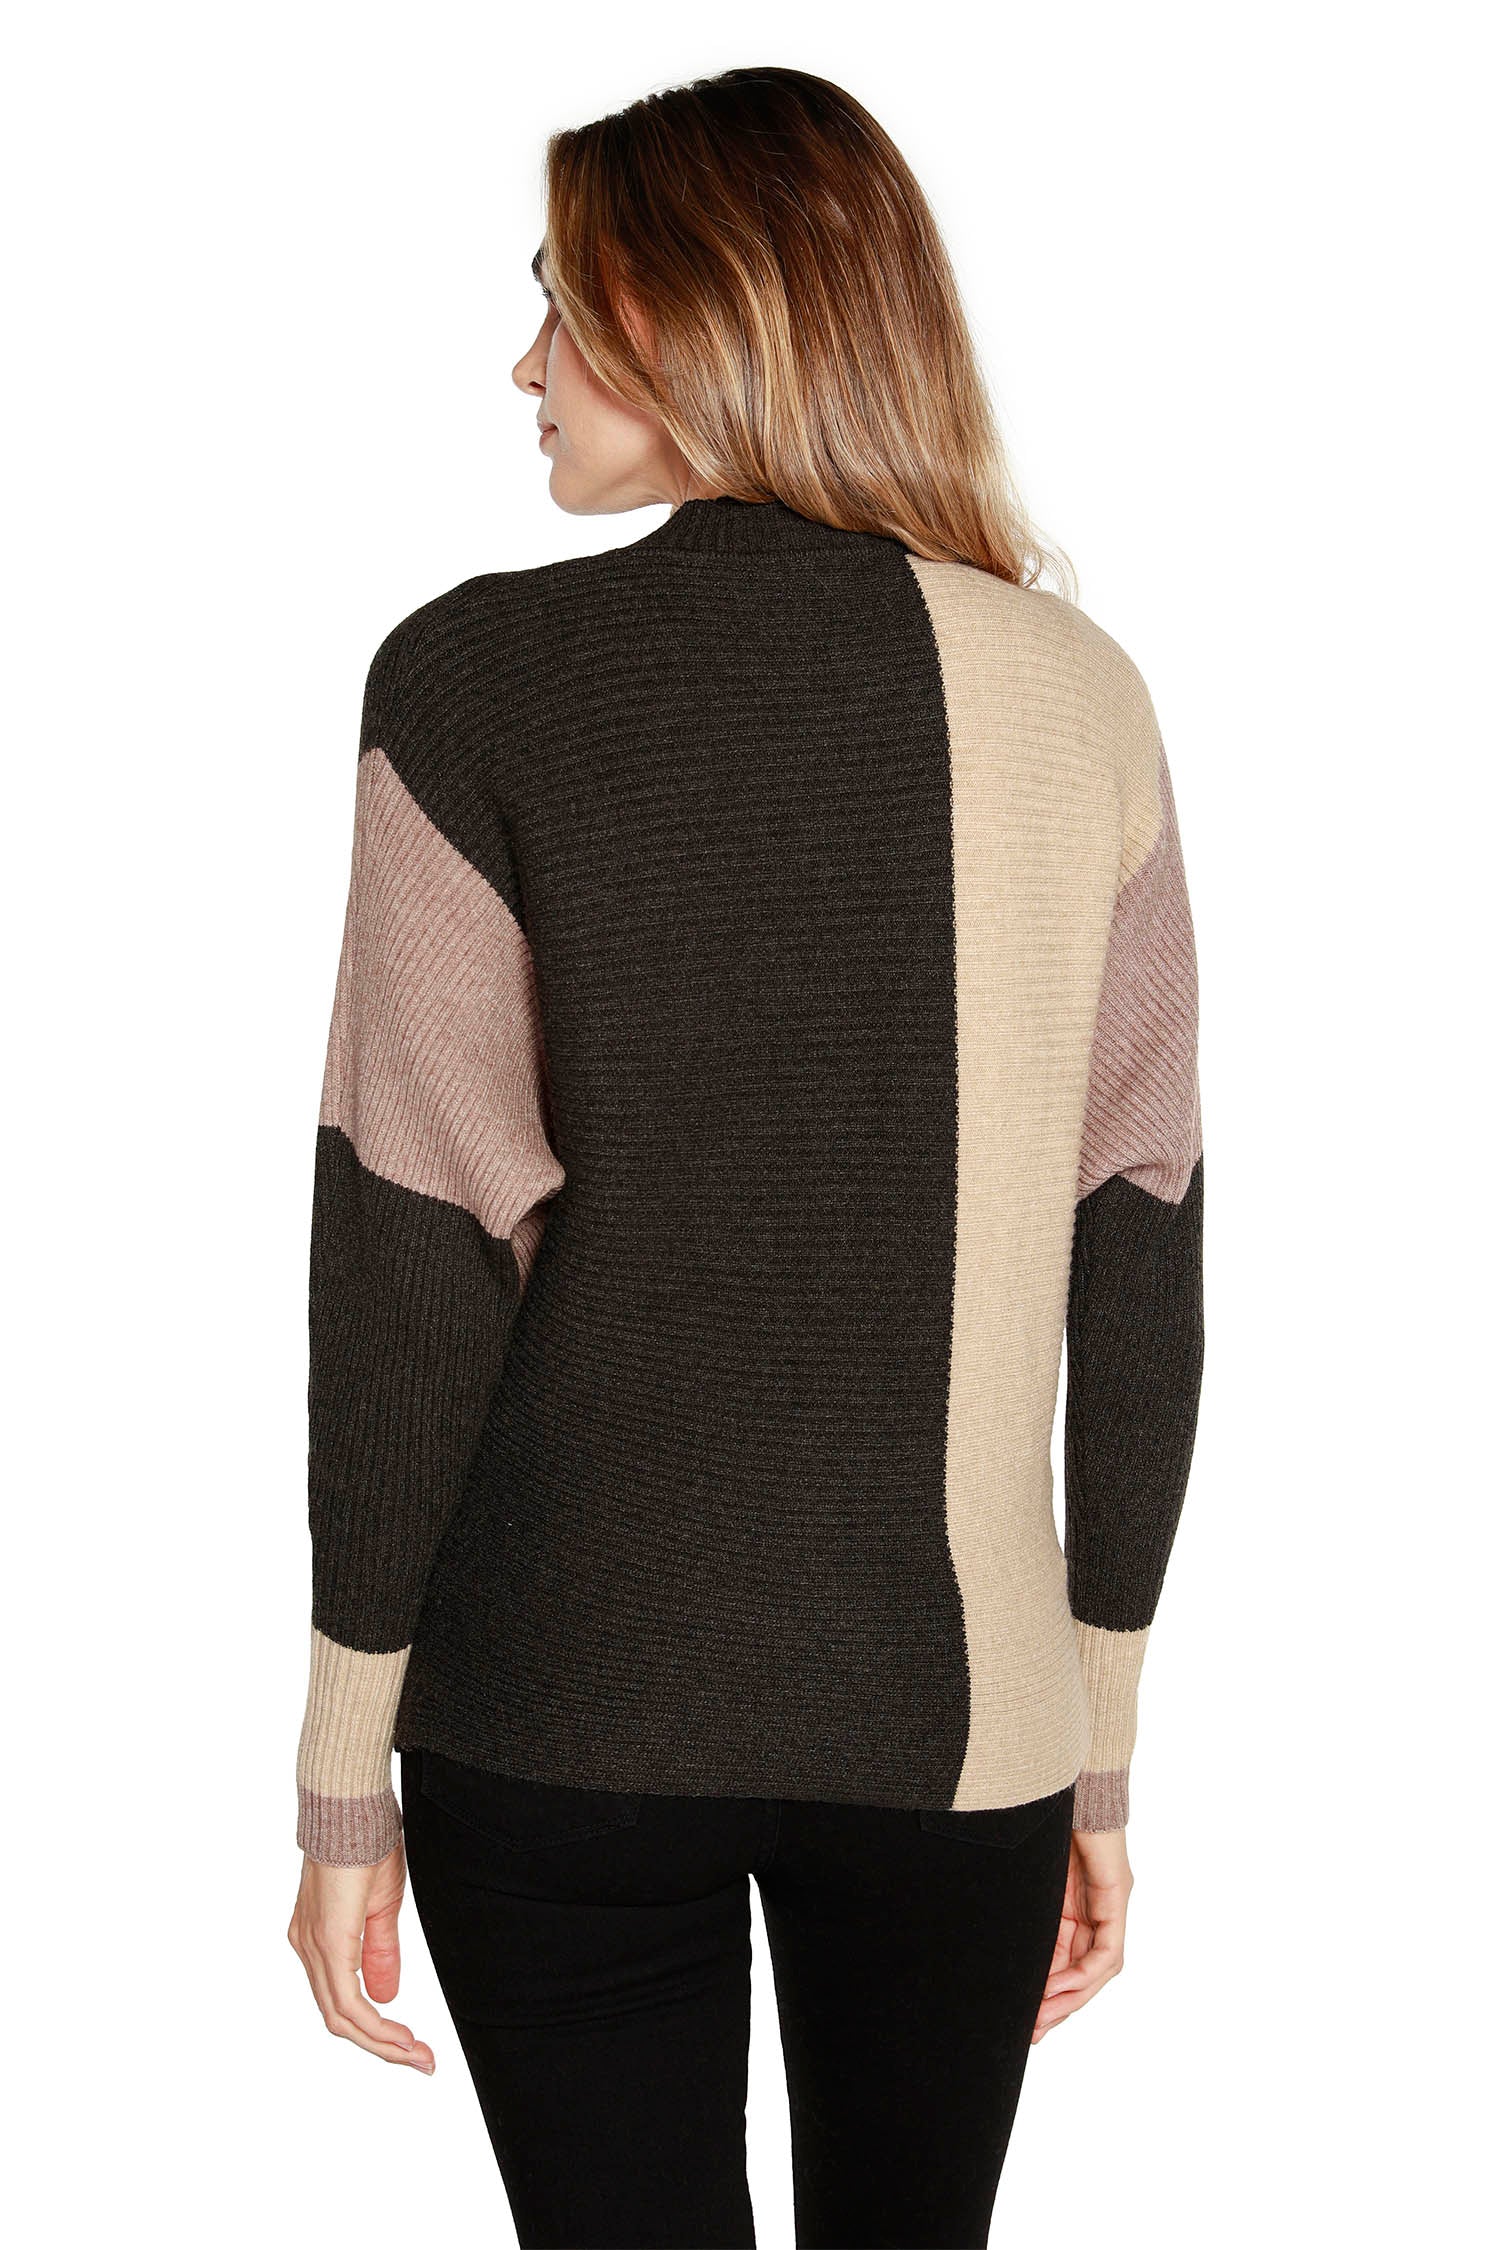 Suéter tipo pulóver para mujer en tejido suave de minicanalé con bloques de color y cuello simulado